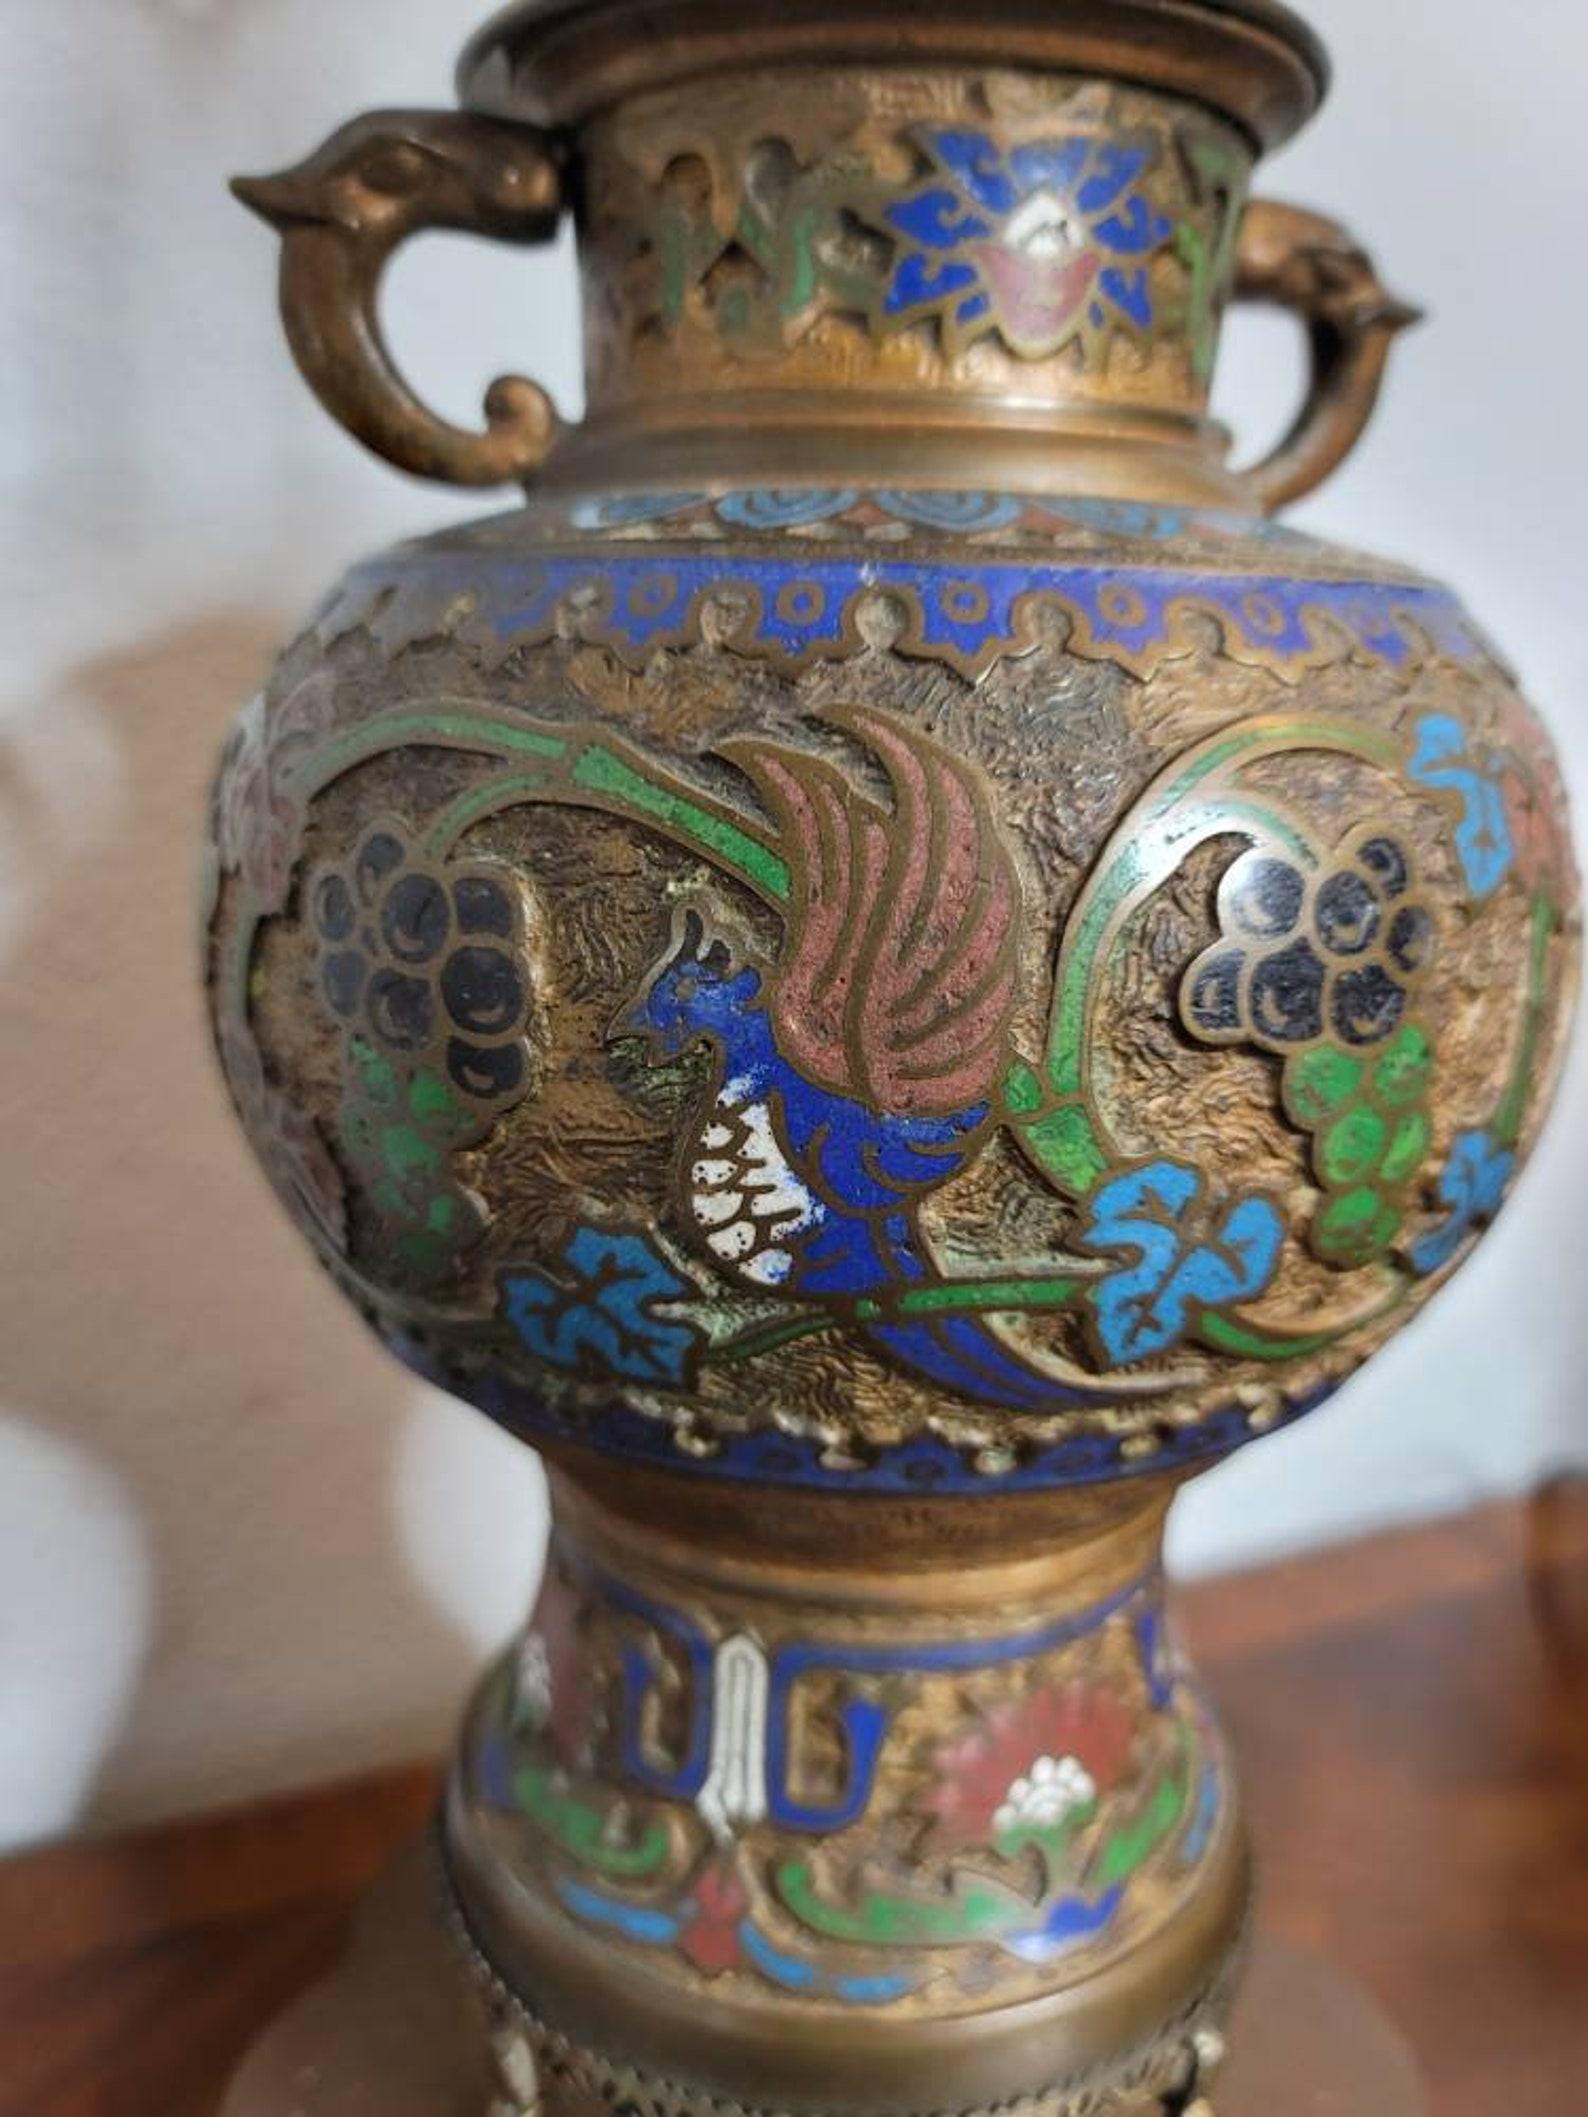 Nous vous proposons une paire d'urnes japonaises de style archaïque de la fin du 19e siècle, transformées en lampes de table très décoratives. 

Japon, période Meiji (1868-1912), avec des éléments plus tardifs, paire presque assortie de deux vases